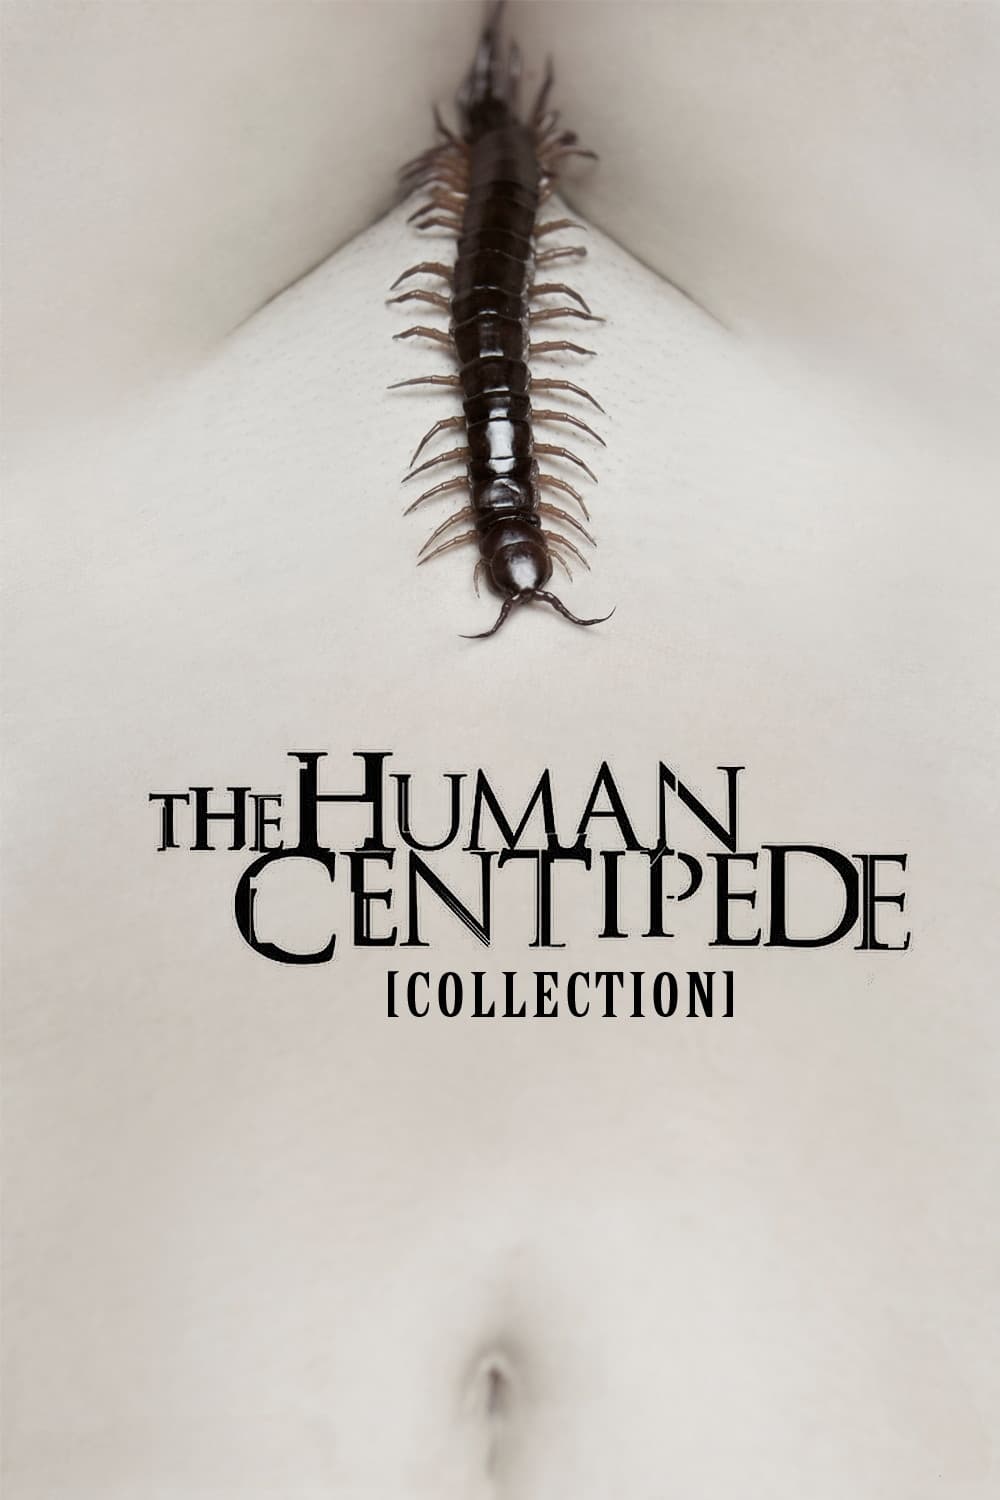 Fiche et filmographie de The Human Centipede Collection